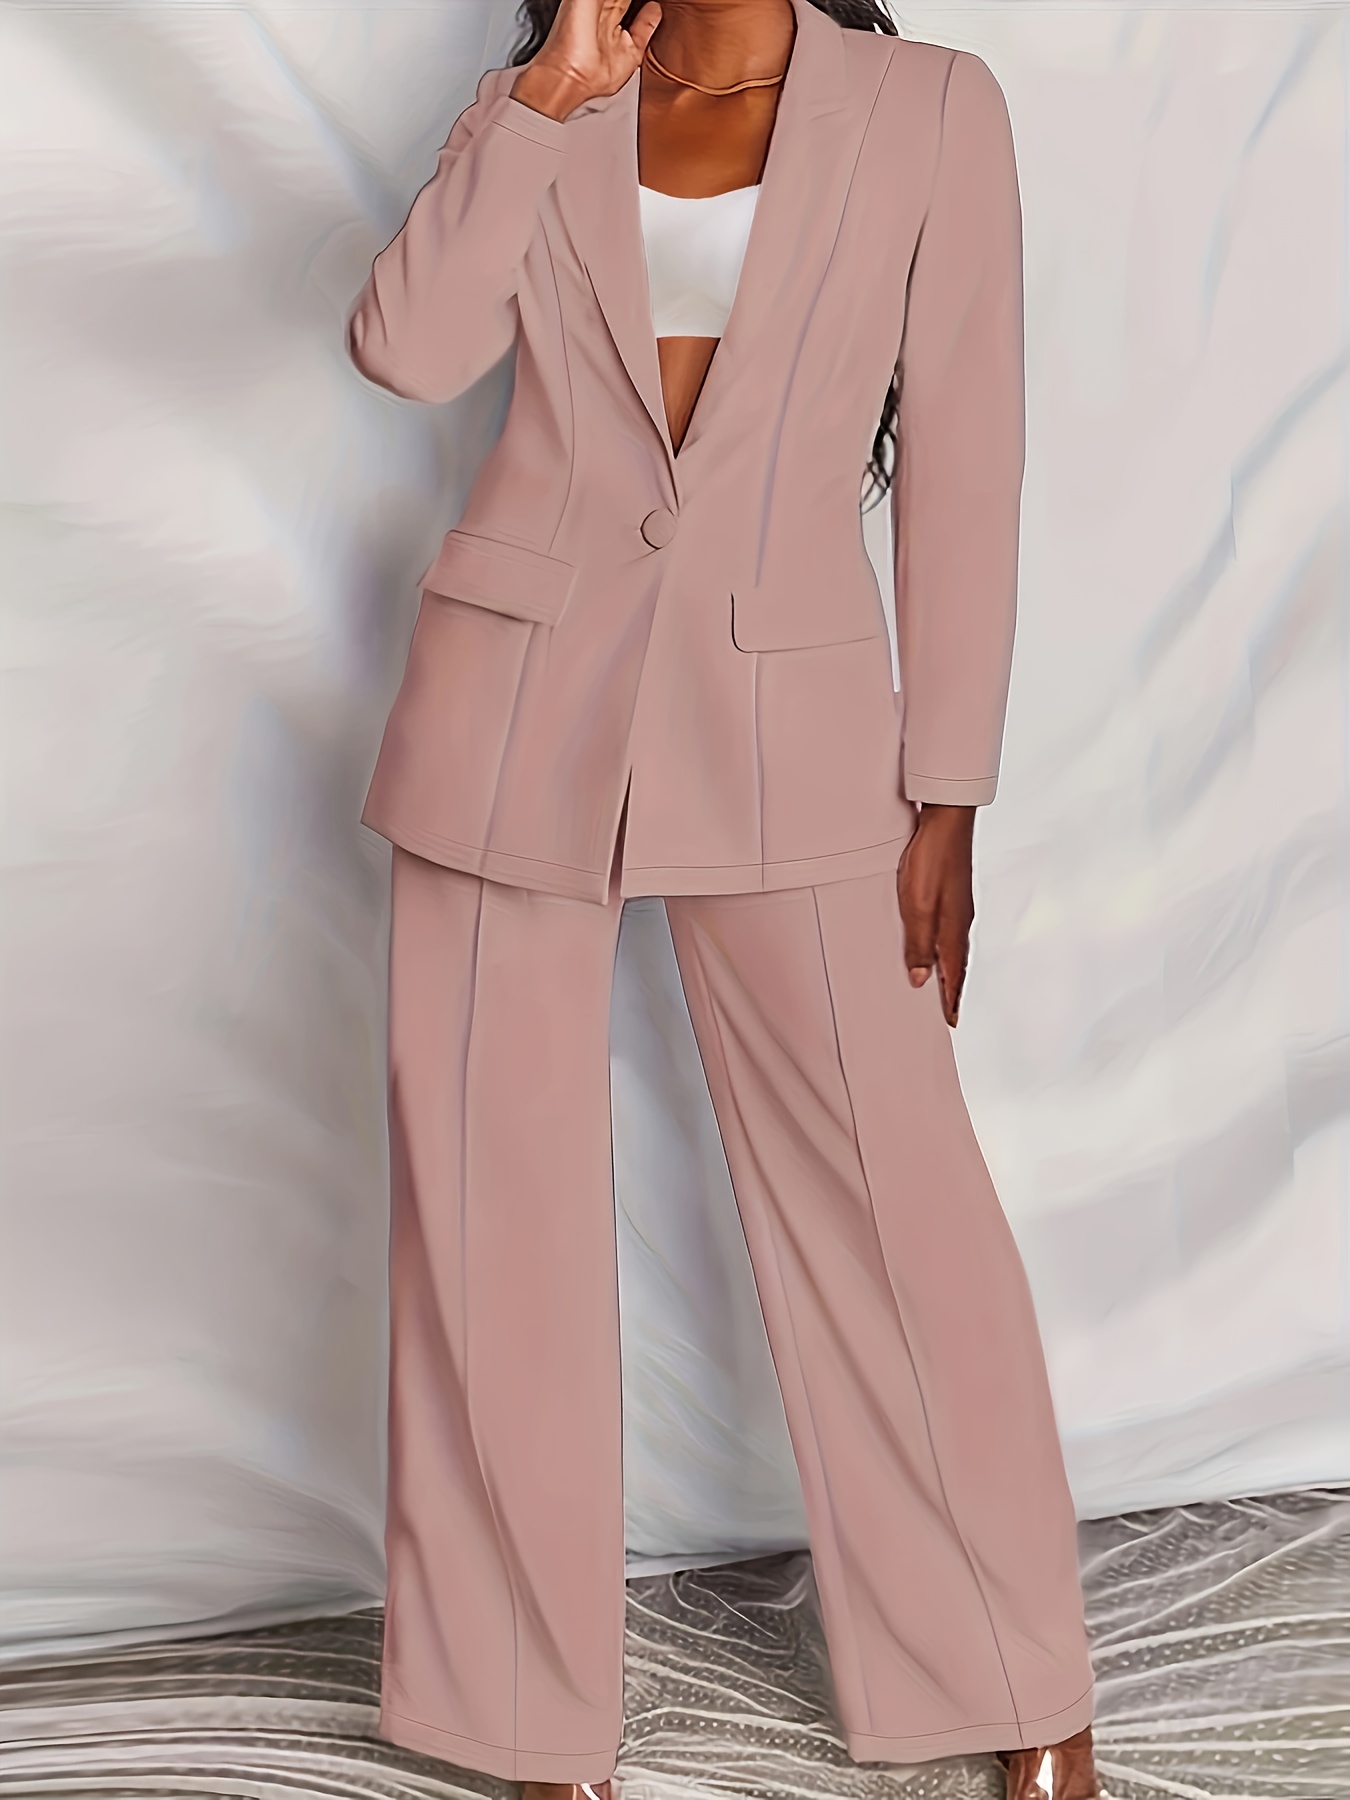 Lavender Pants Suit for Women, Office Pant Suit Set for Women, Blazer Suit  Set Womens, High Waist Straight Pants, Blazer and Trousers Women -   Canada